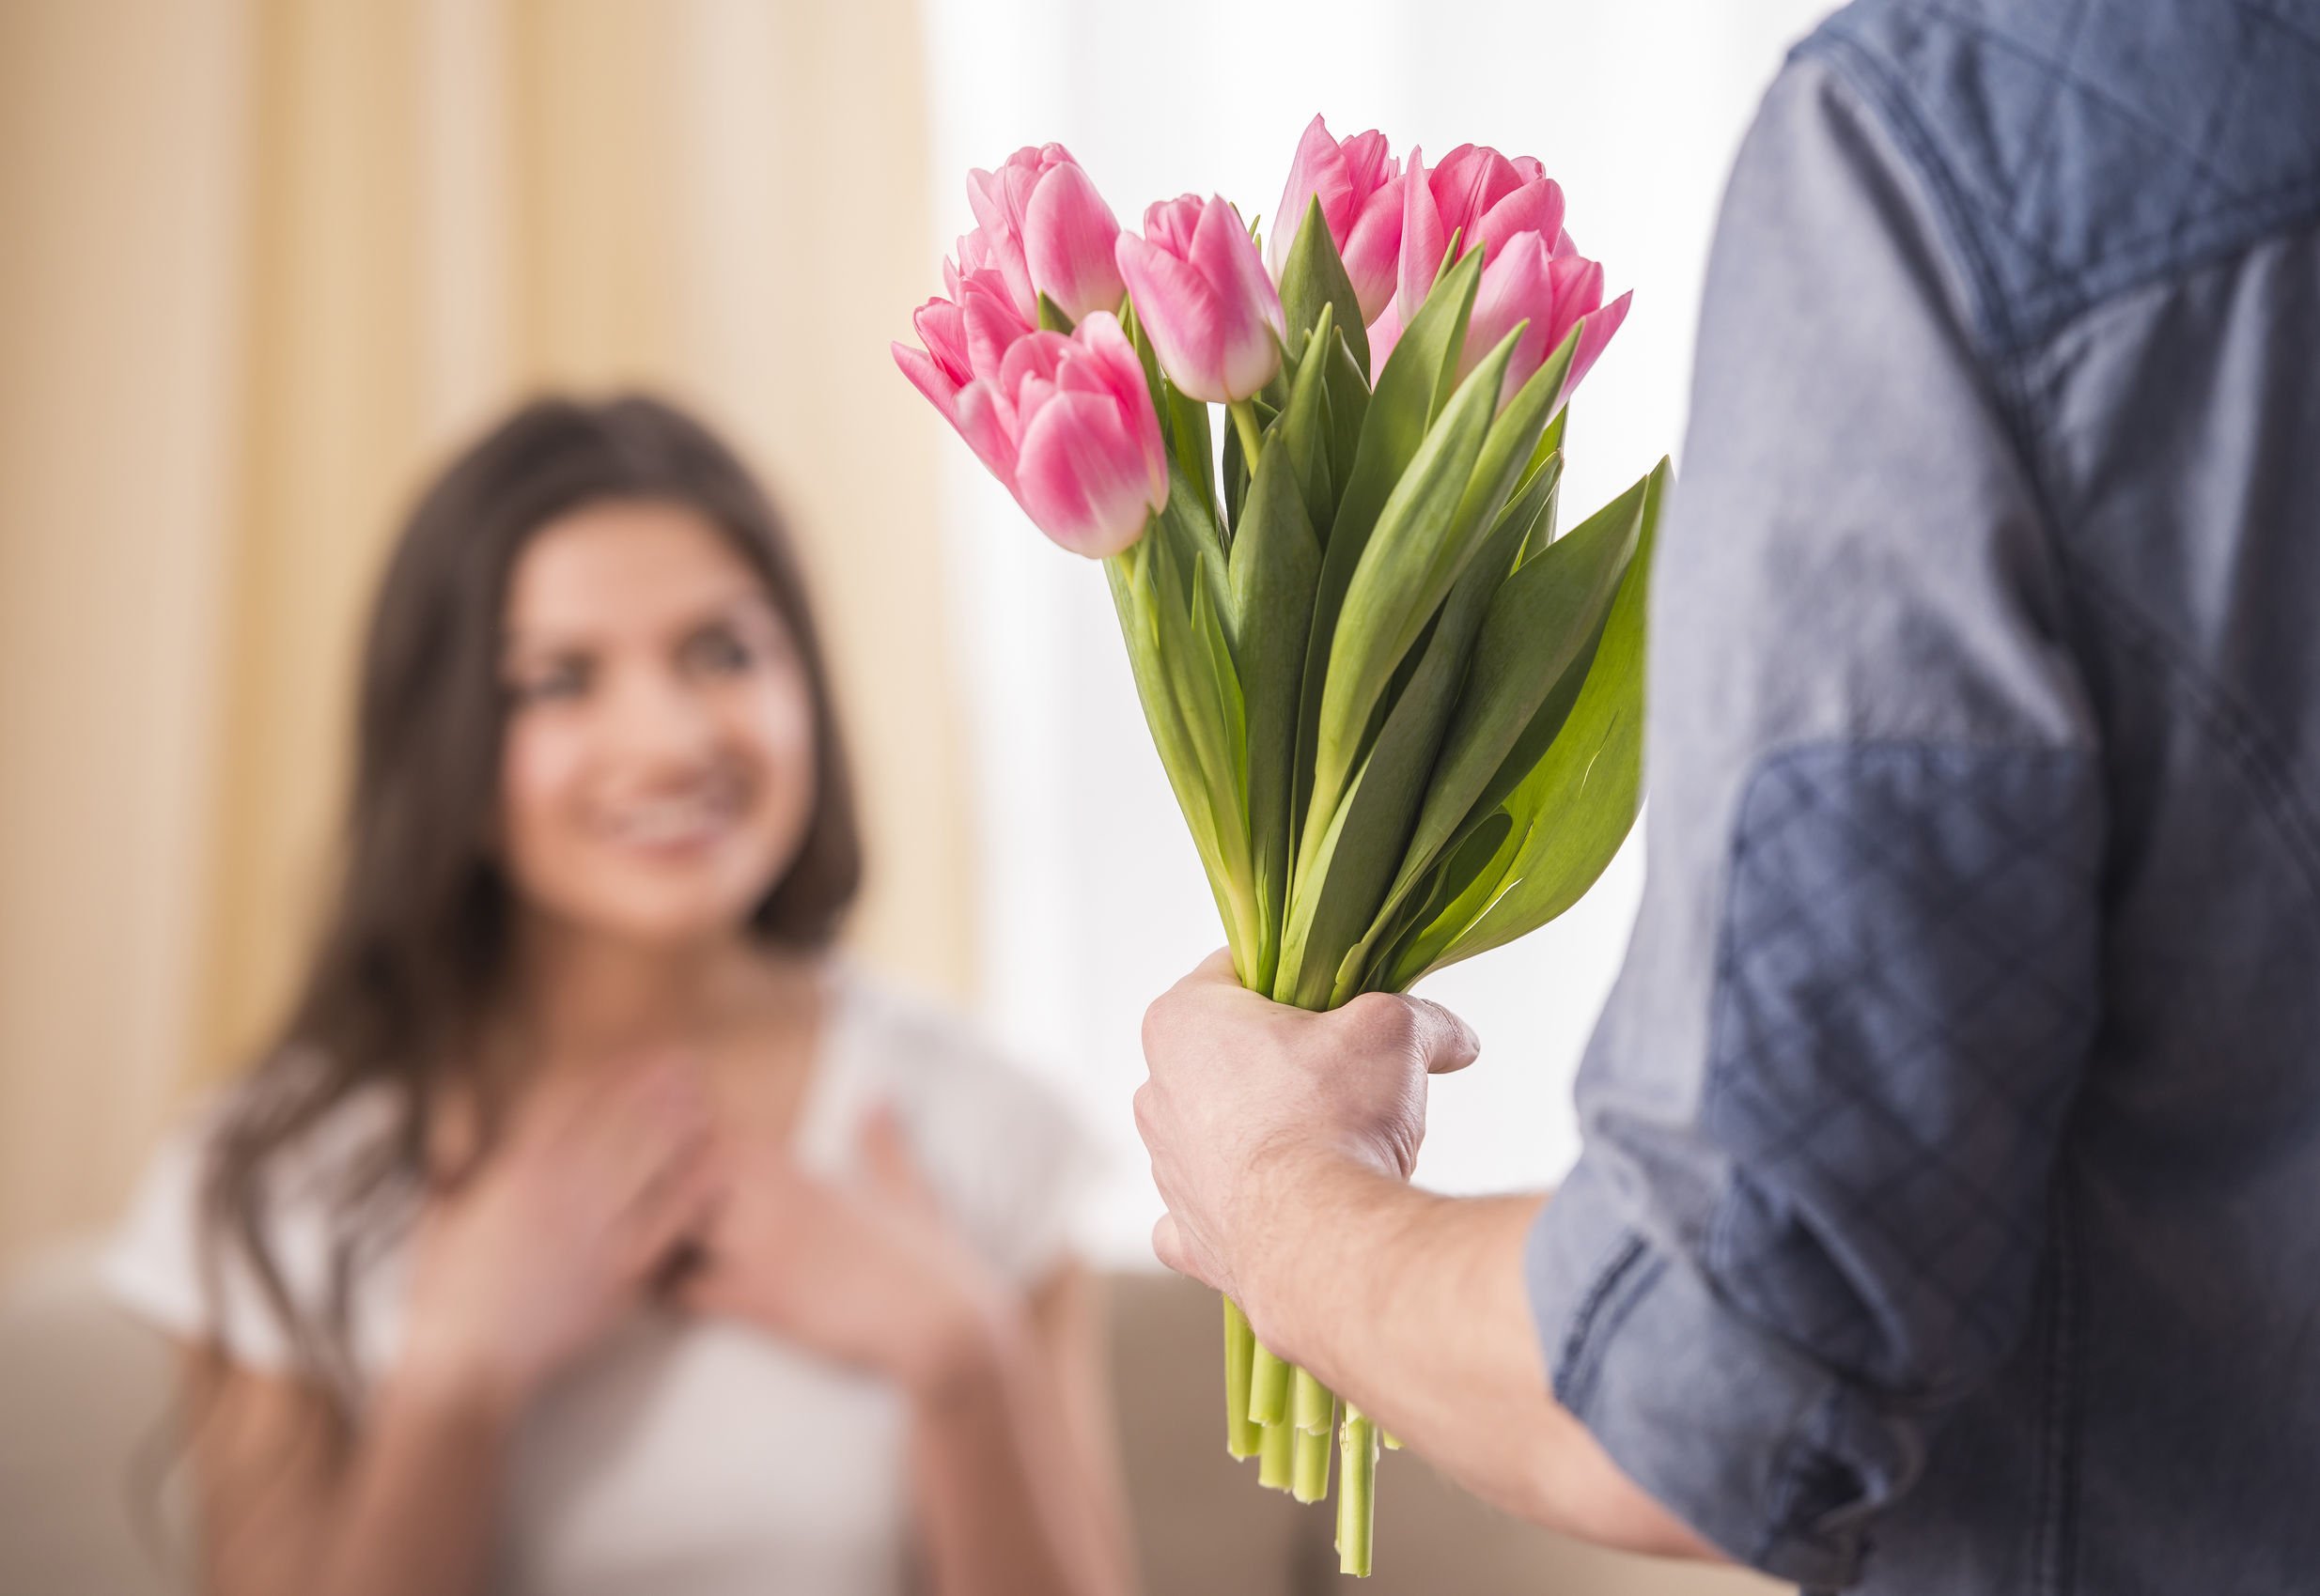 Сколько дарят цветов тюльпанов. Девушка с букетом тюльпанов. Букет "женщине". Тюльпаны в руках. Мужчина с букетом тюльпанов.